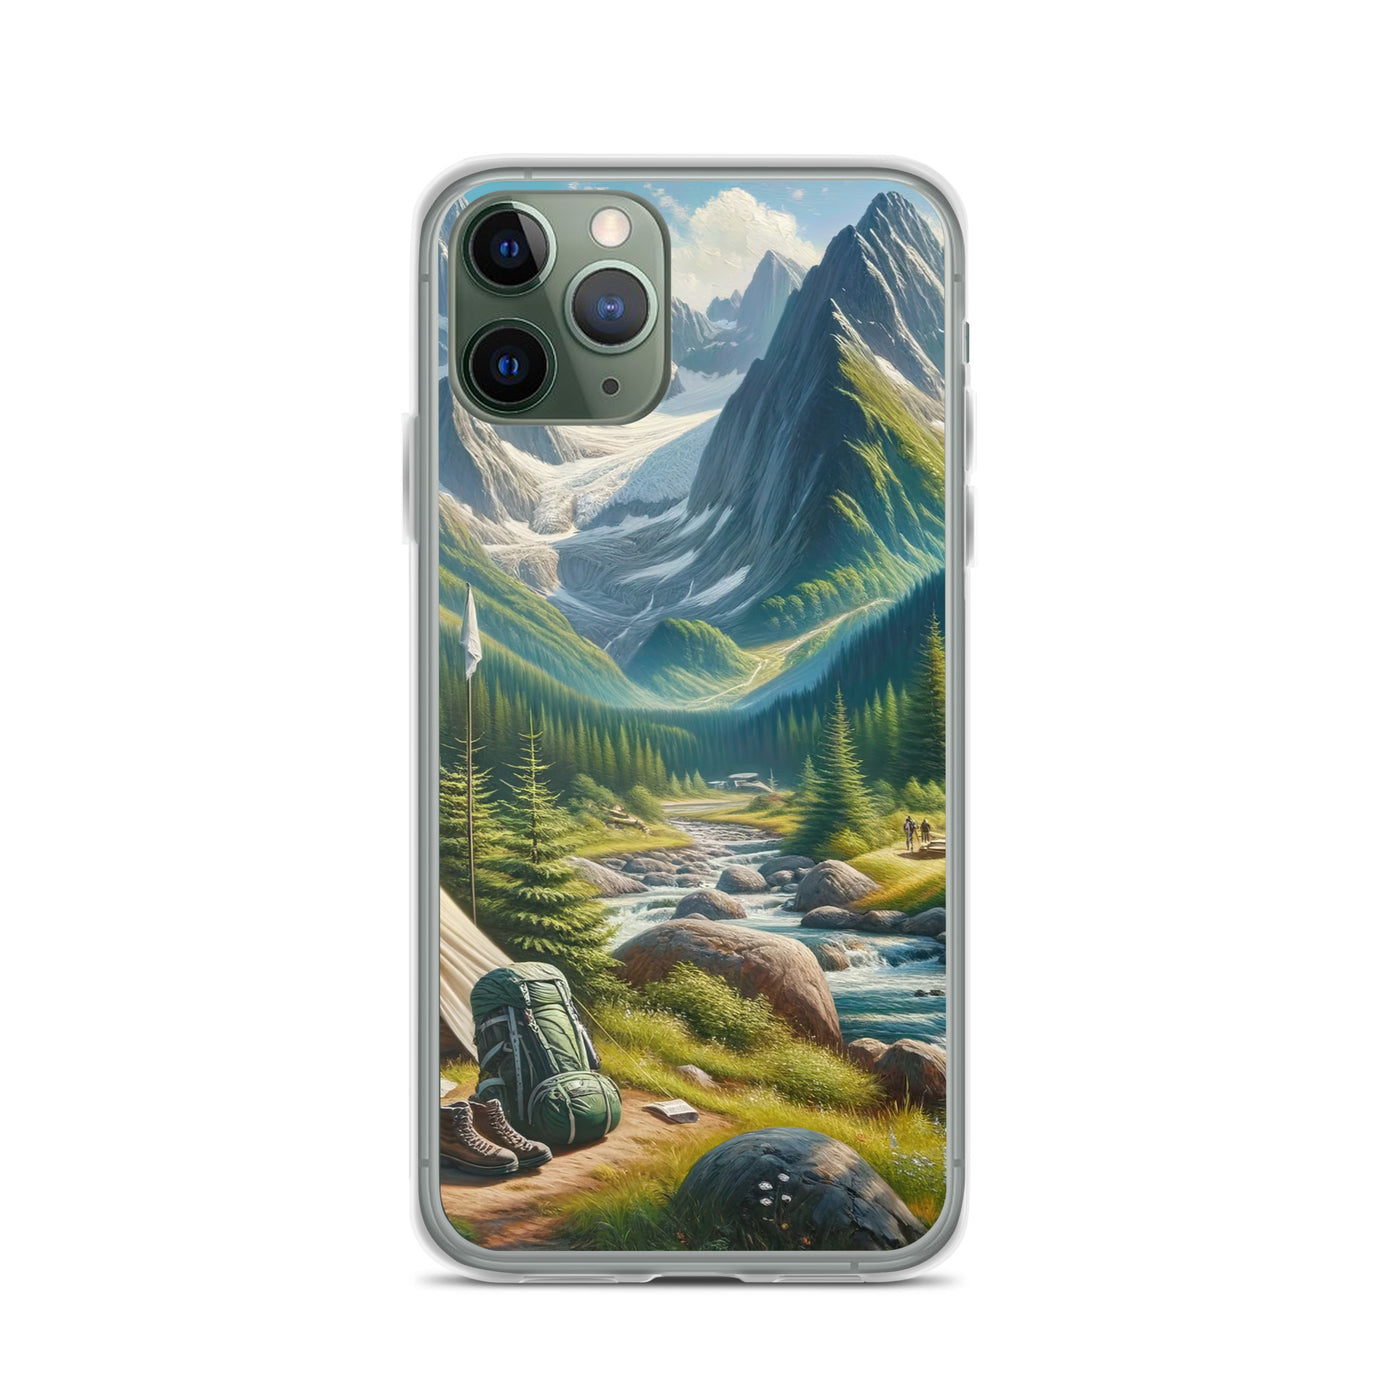 Ölgemälde der Alpensommerlandschaft mit Zelt, Gipfeln, Wäldern und Bächen - iPhone Schutzhülle (durchsichtig) camping xxx yyy zzz iPhone 11 Pro